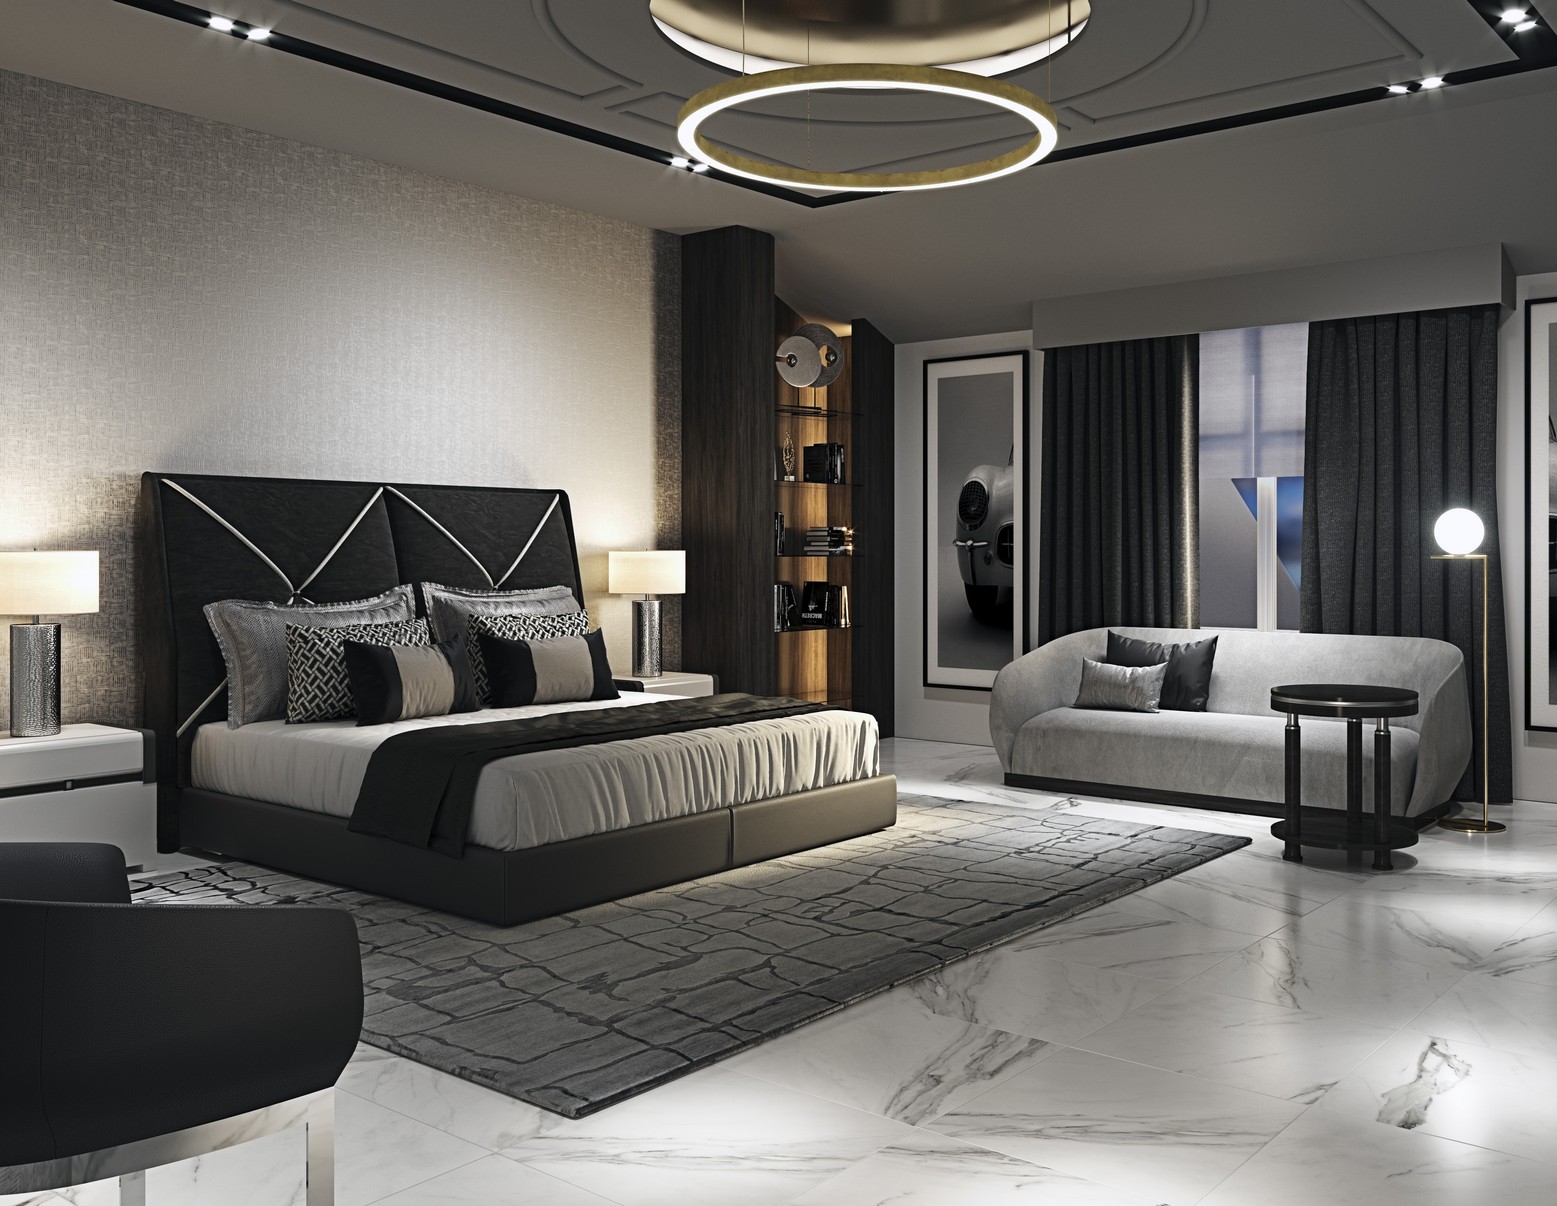 Modèle Luxury bedroom project